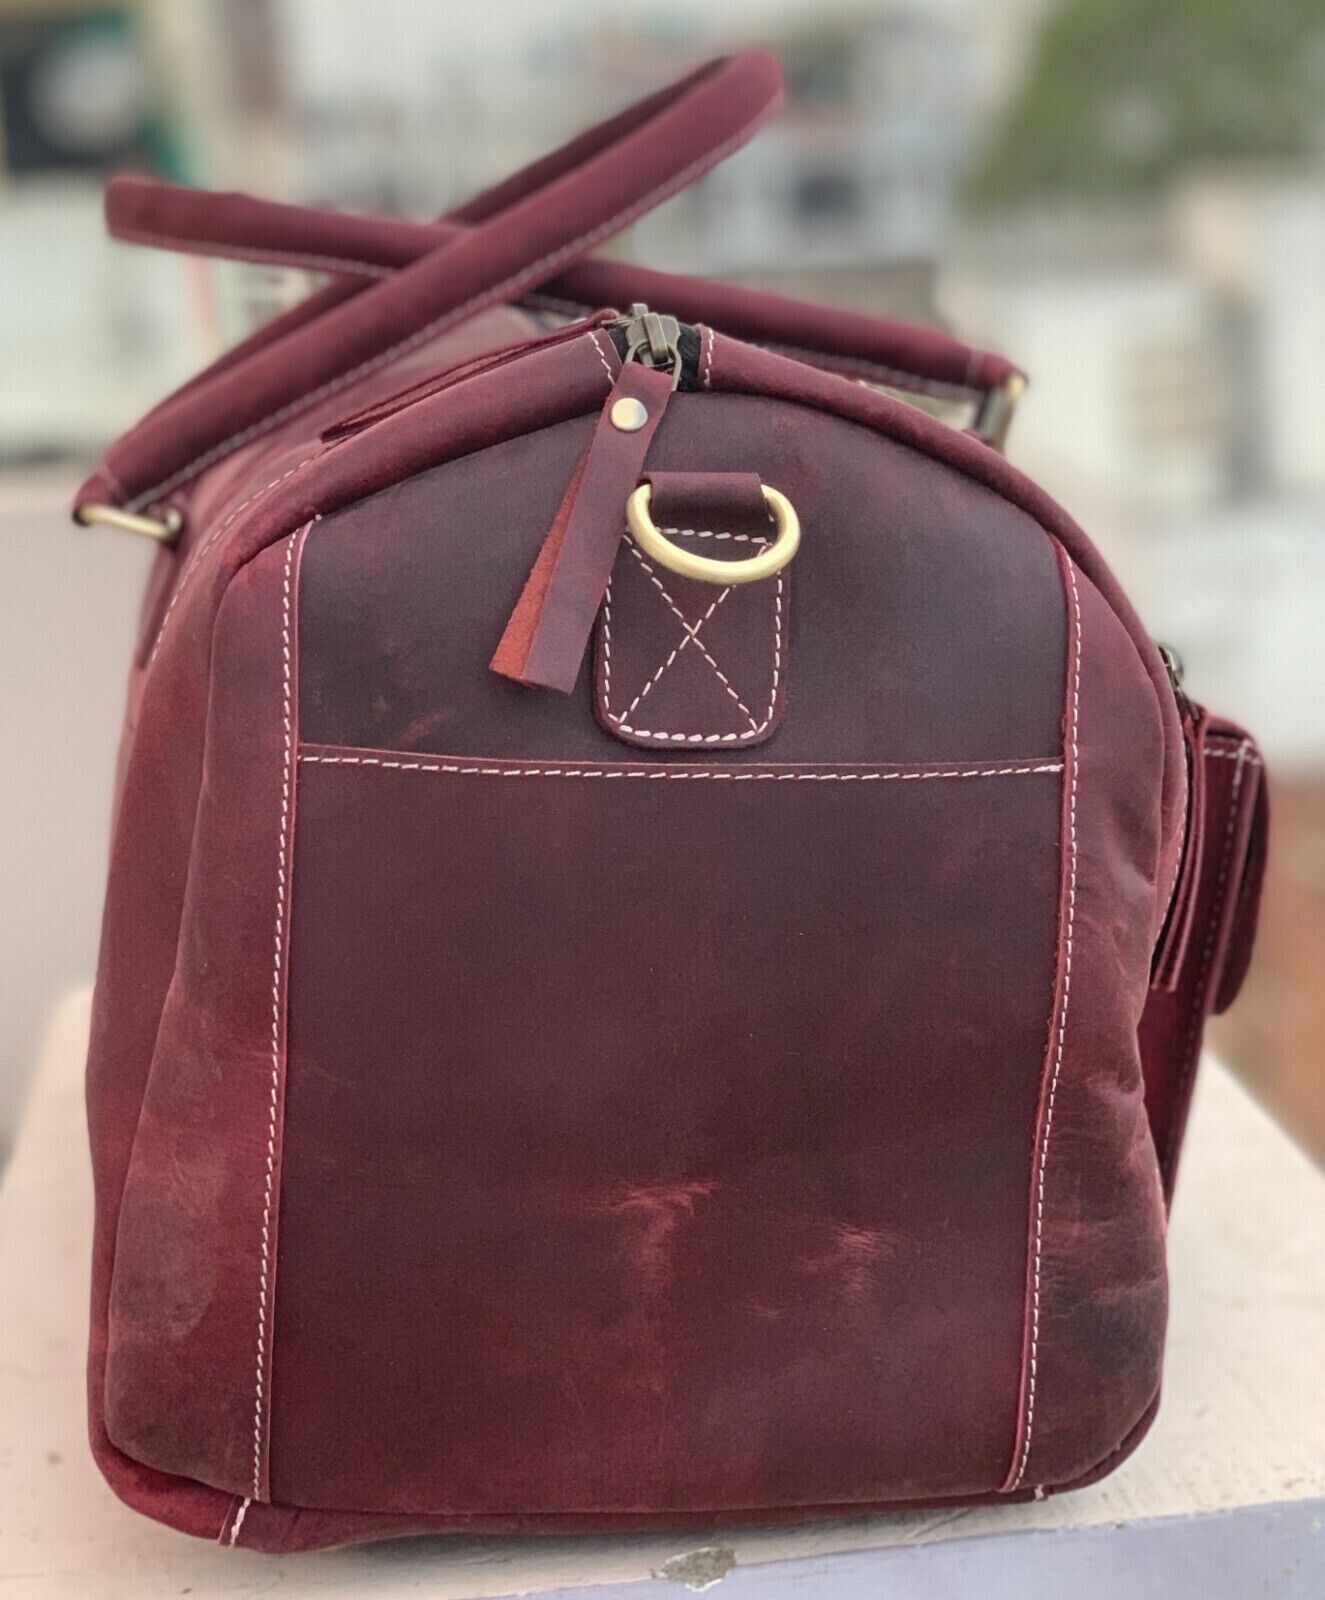 Red Maroon Leather Weekender Bag